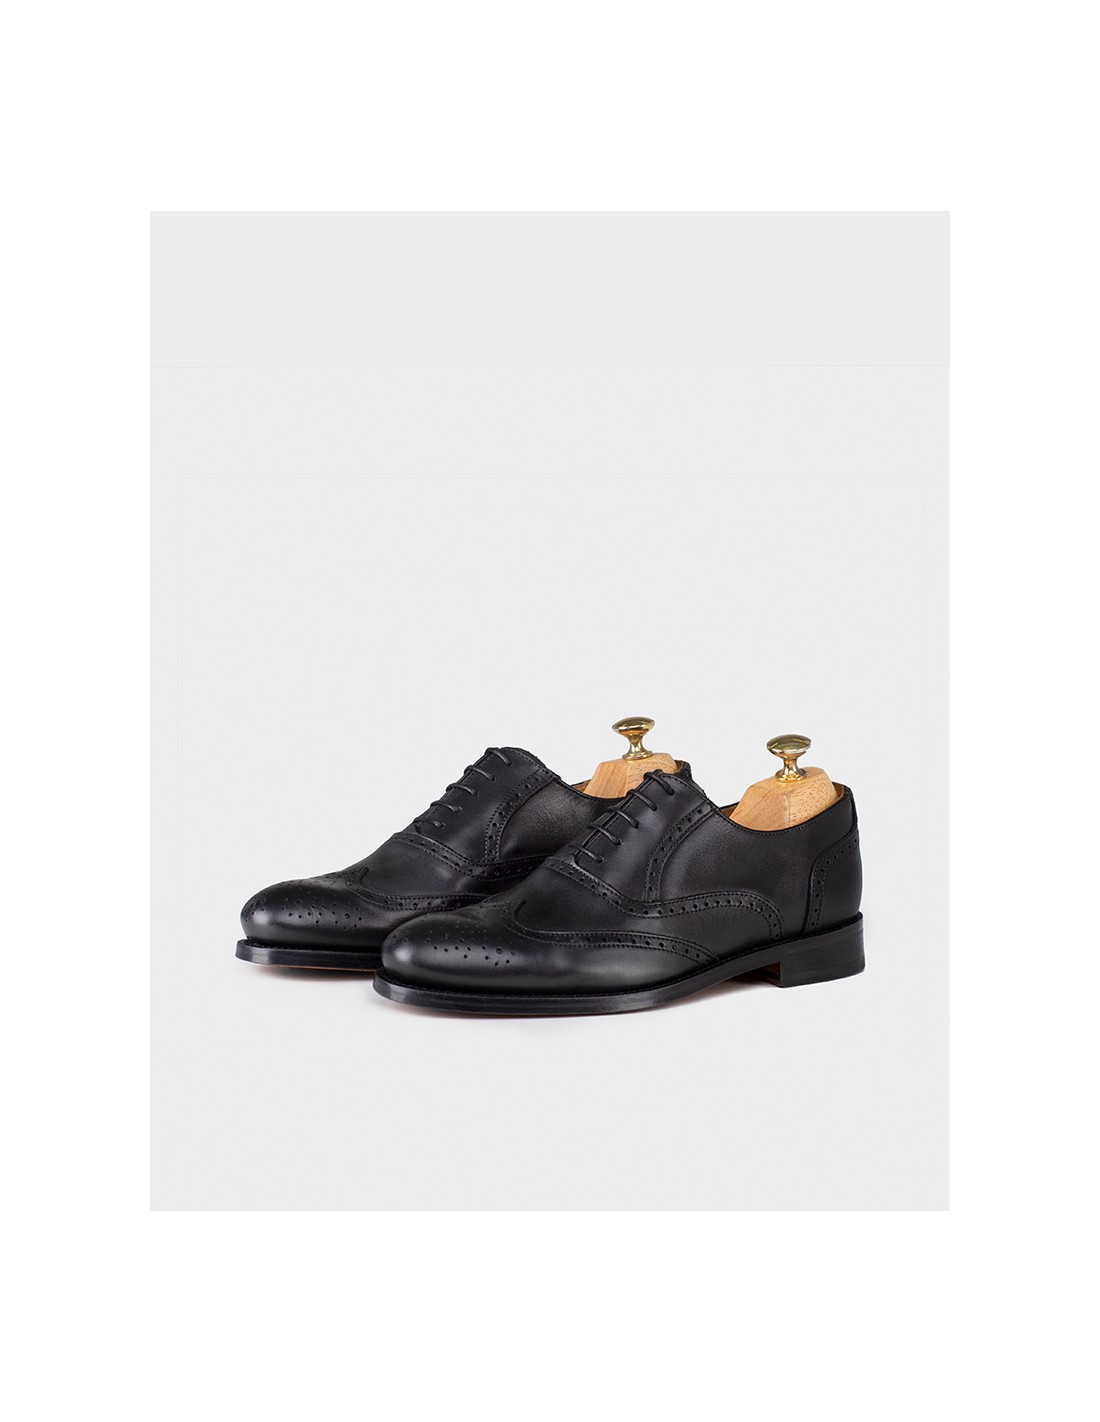 Zapatos Cordones Negro Estilo Brogue | JOHN TWEED